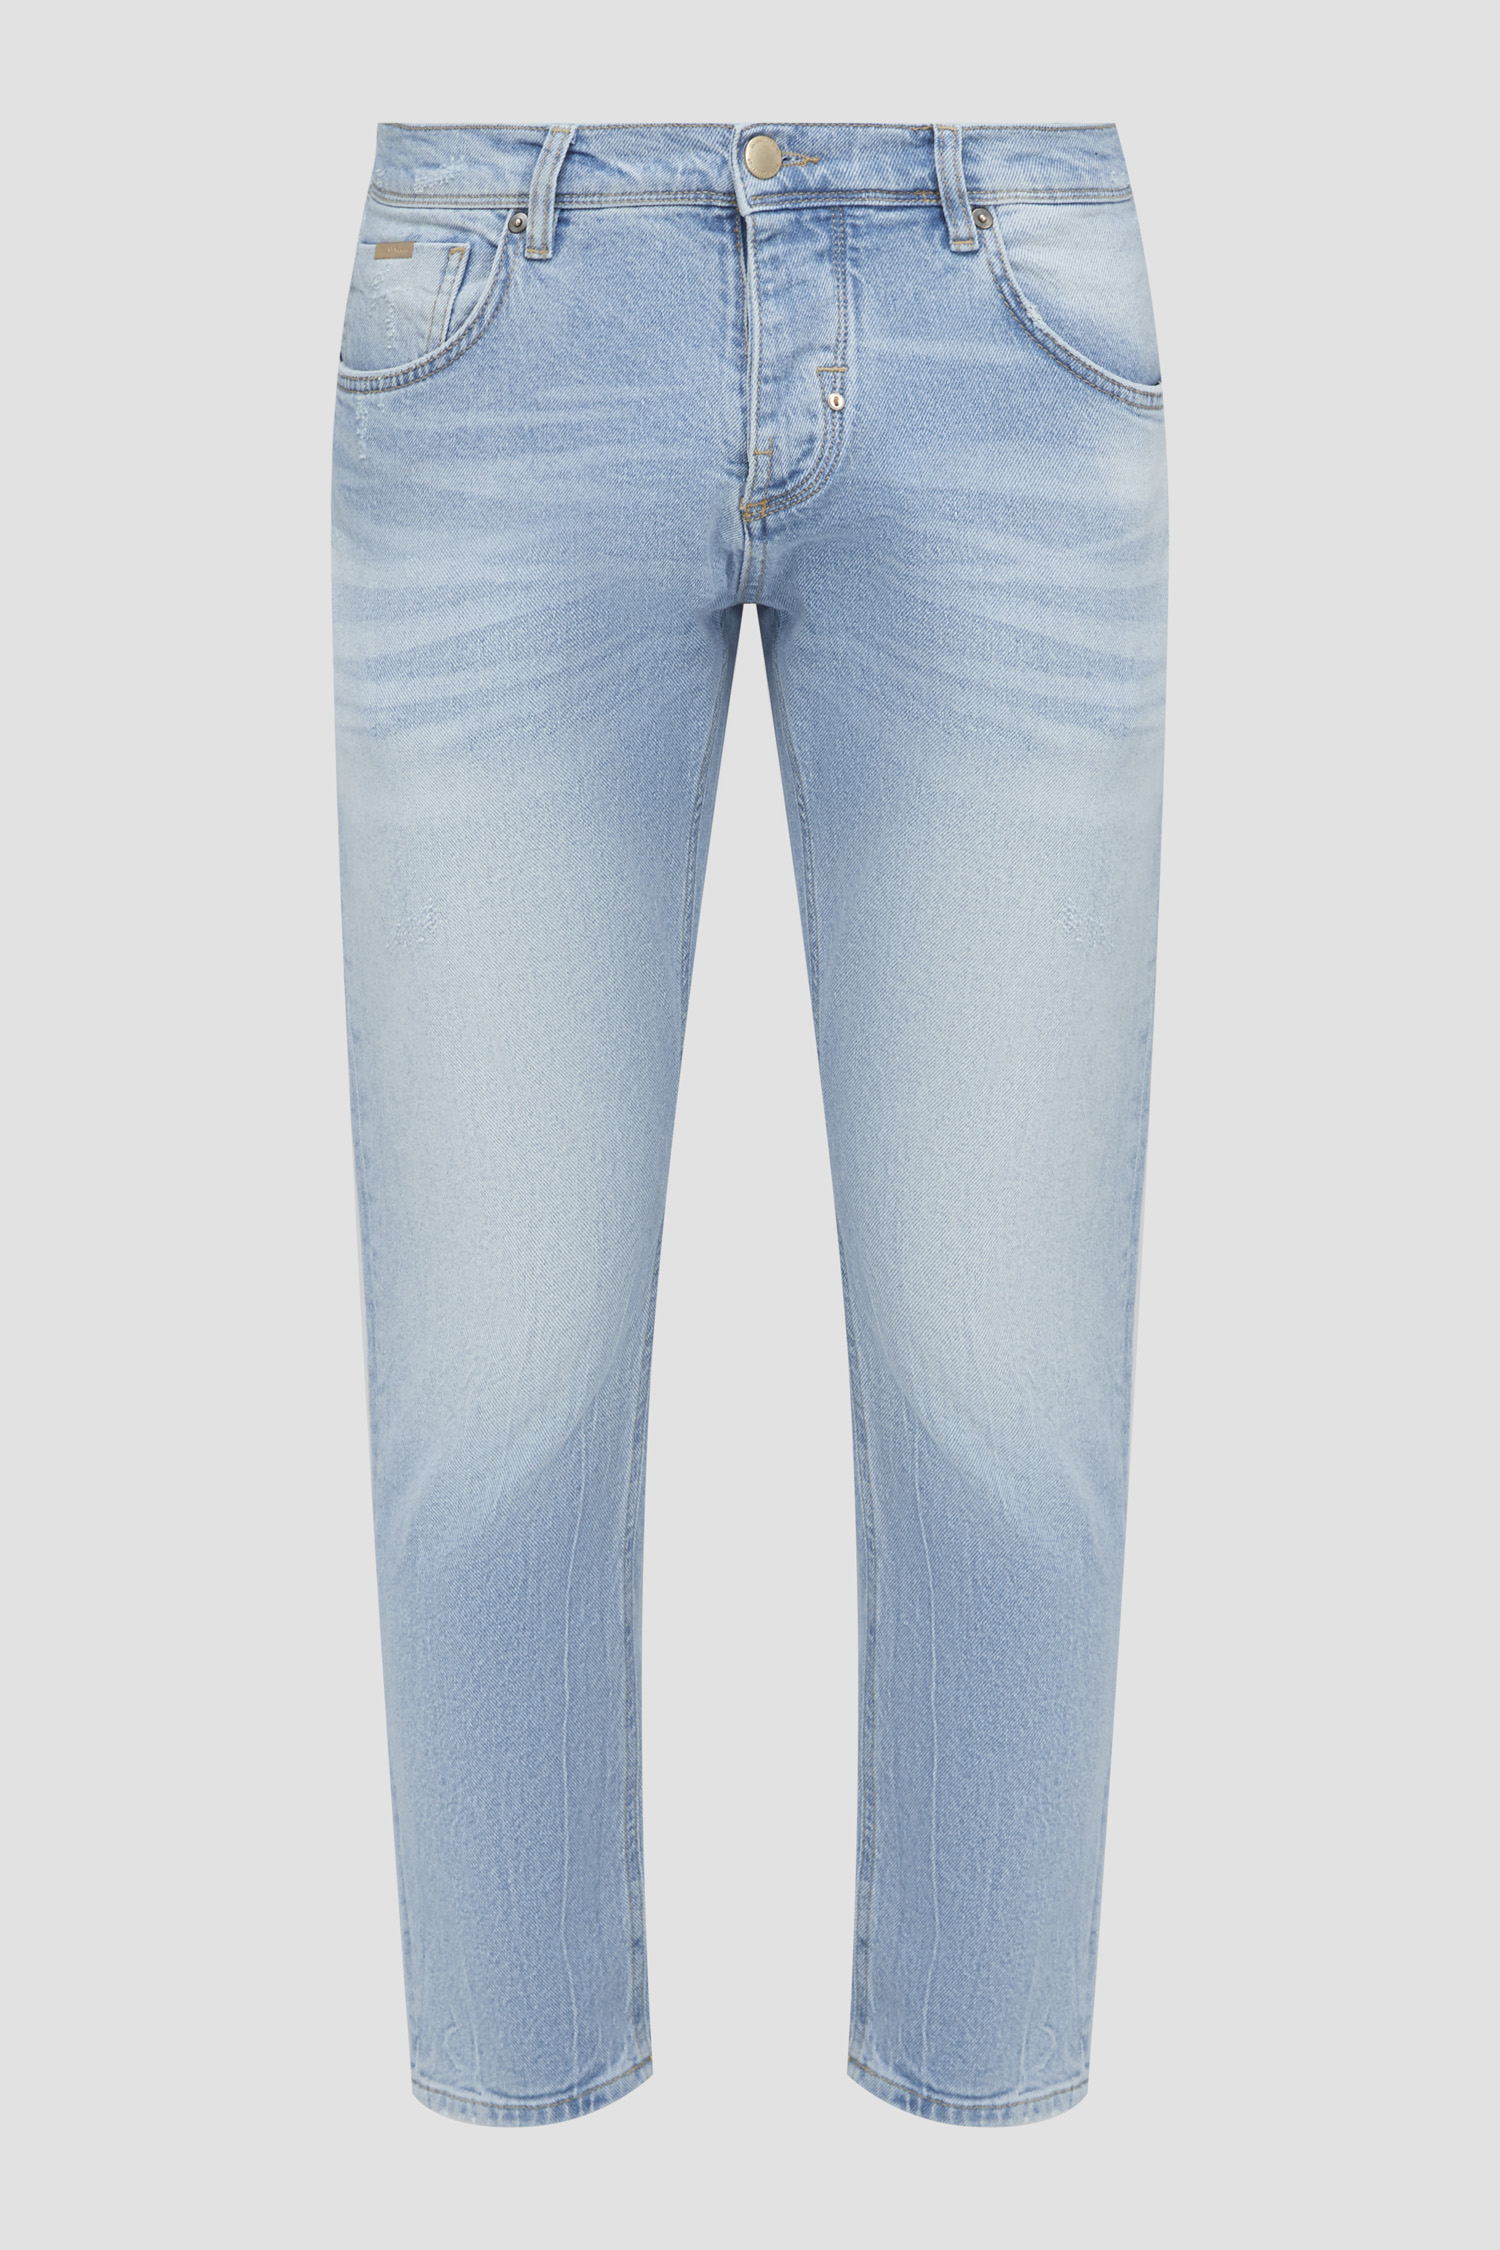 Мужские голубые джинсы Antony Morato MMDT00264.FA750475;7010